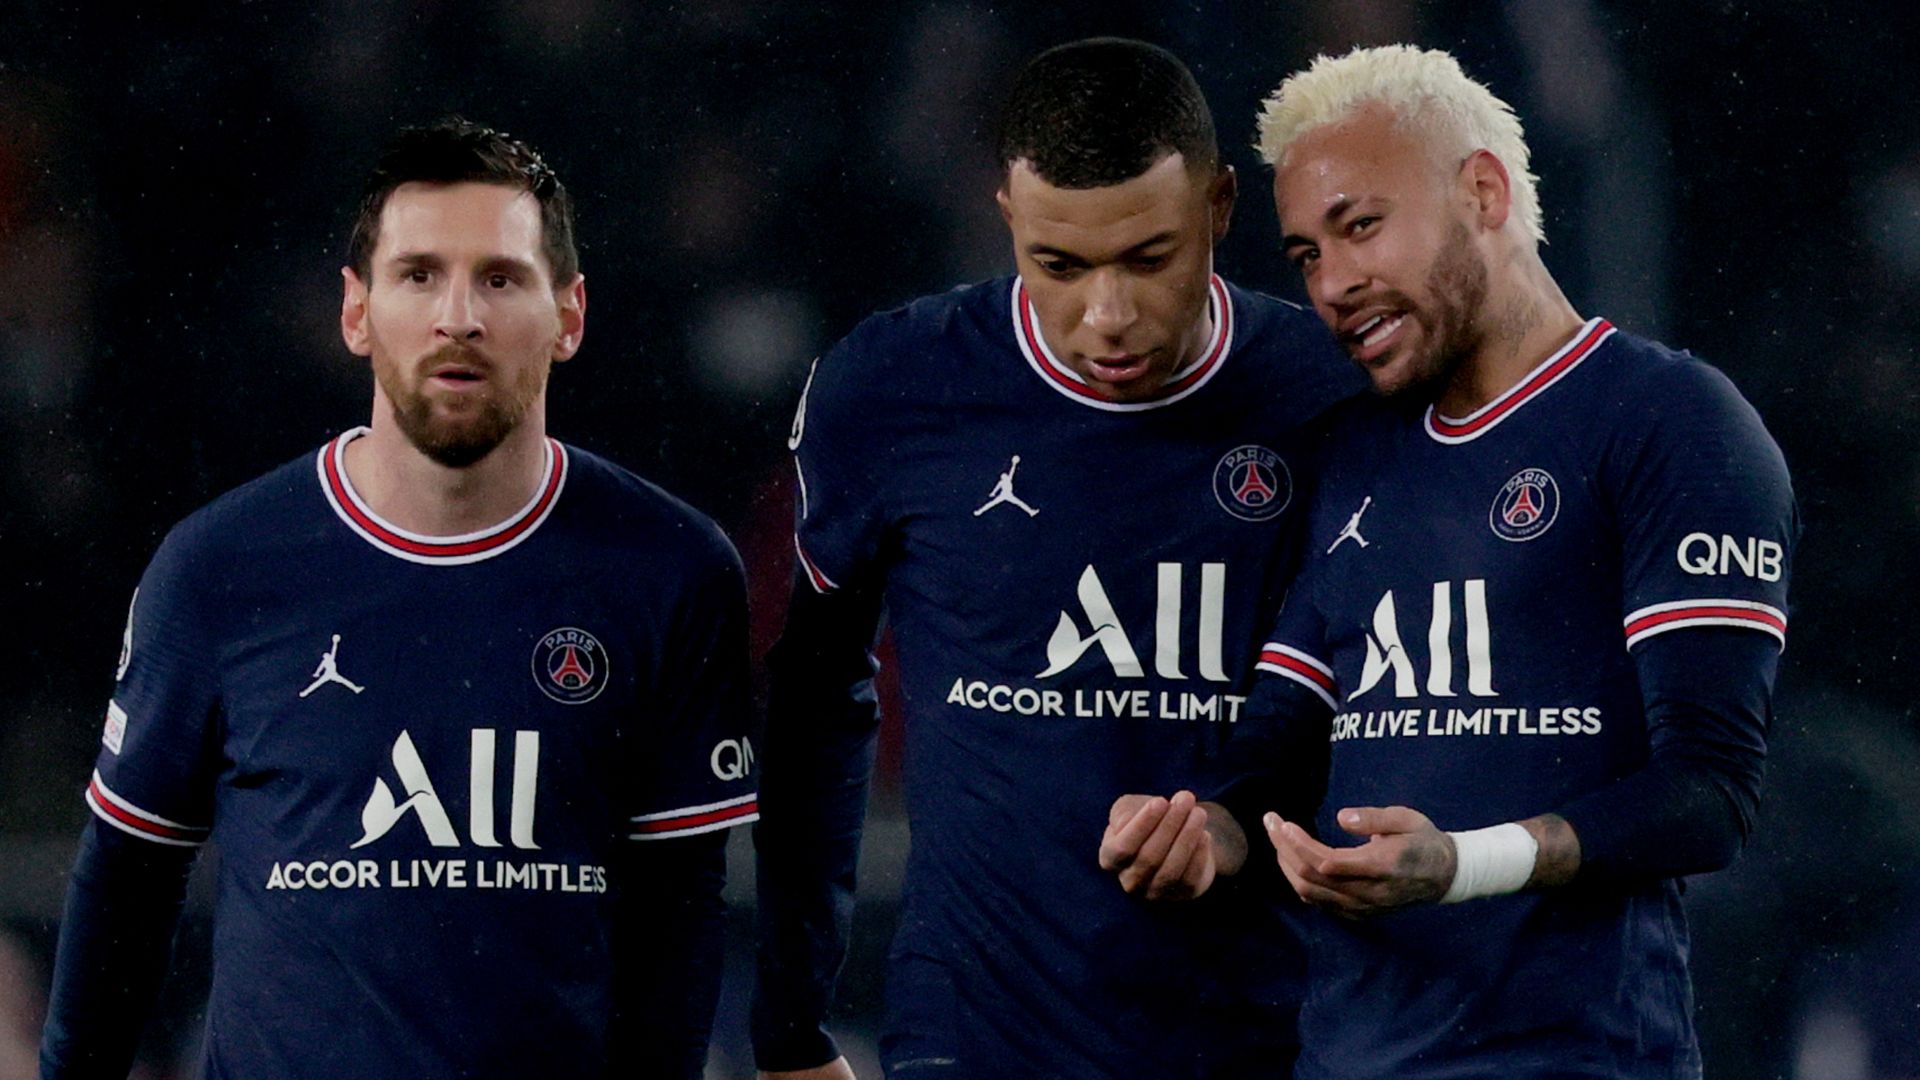 Ligue 1: Ligue 1 là giải đấu bóng đá nổi tiếng của Pháp, với những câu lạc bộ hàng đầu như Paris Saint-Germain, Marseille và Lyon. Xem các hình ảnh về Ligue 1 và gặp gỡ các cầu thủ tài năng của giải đấu này, bạn sẽ được hòa mình trong một không khí cực kỳ sống động và đầy cảm xúc.